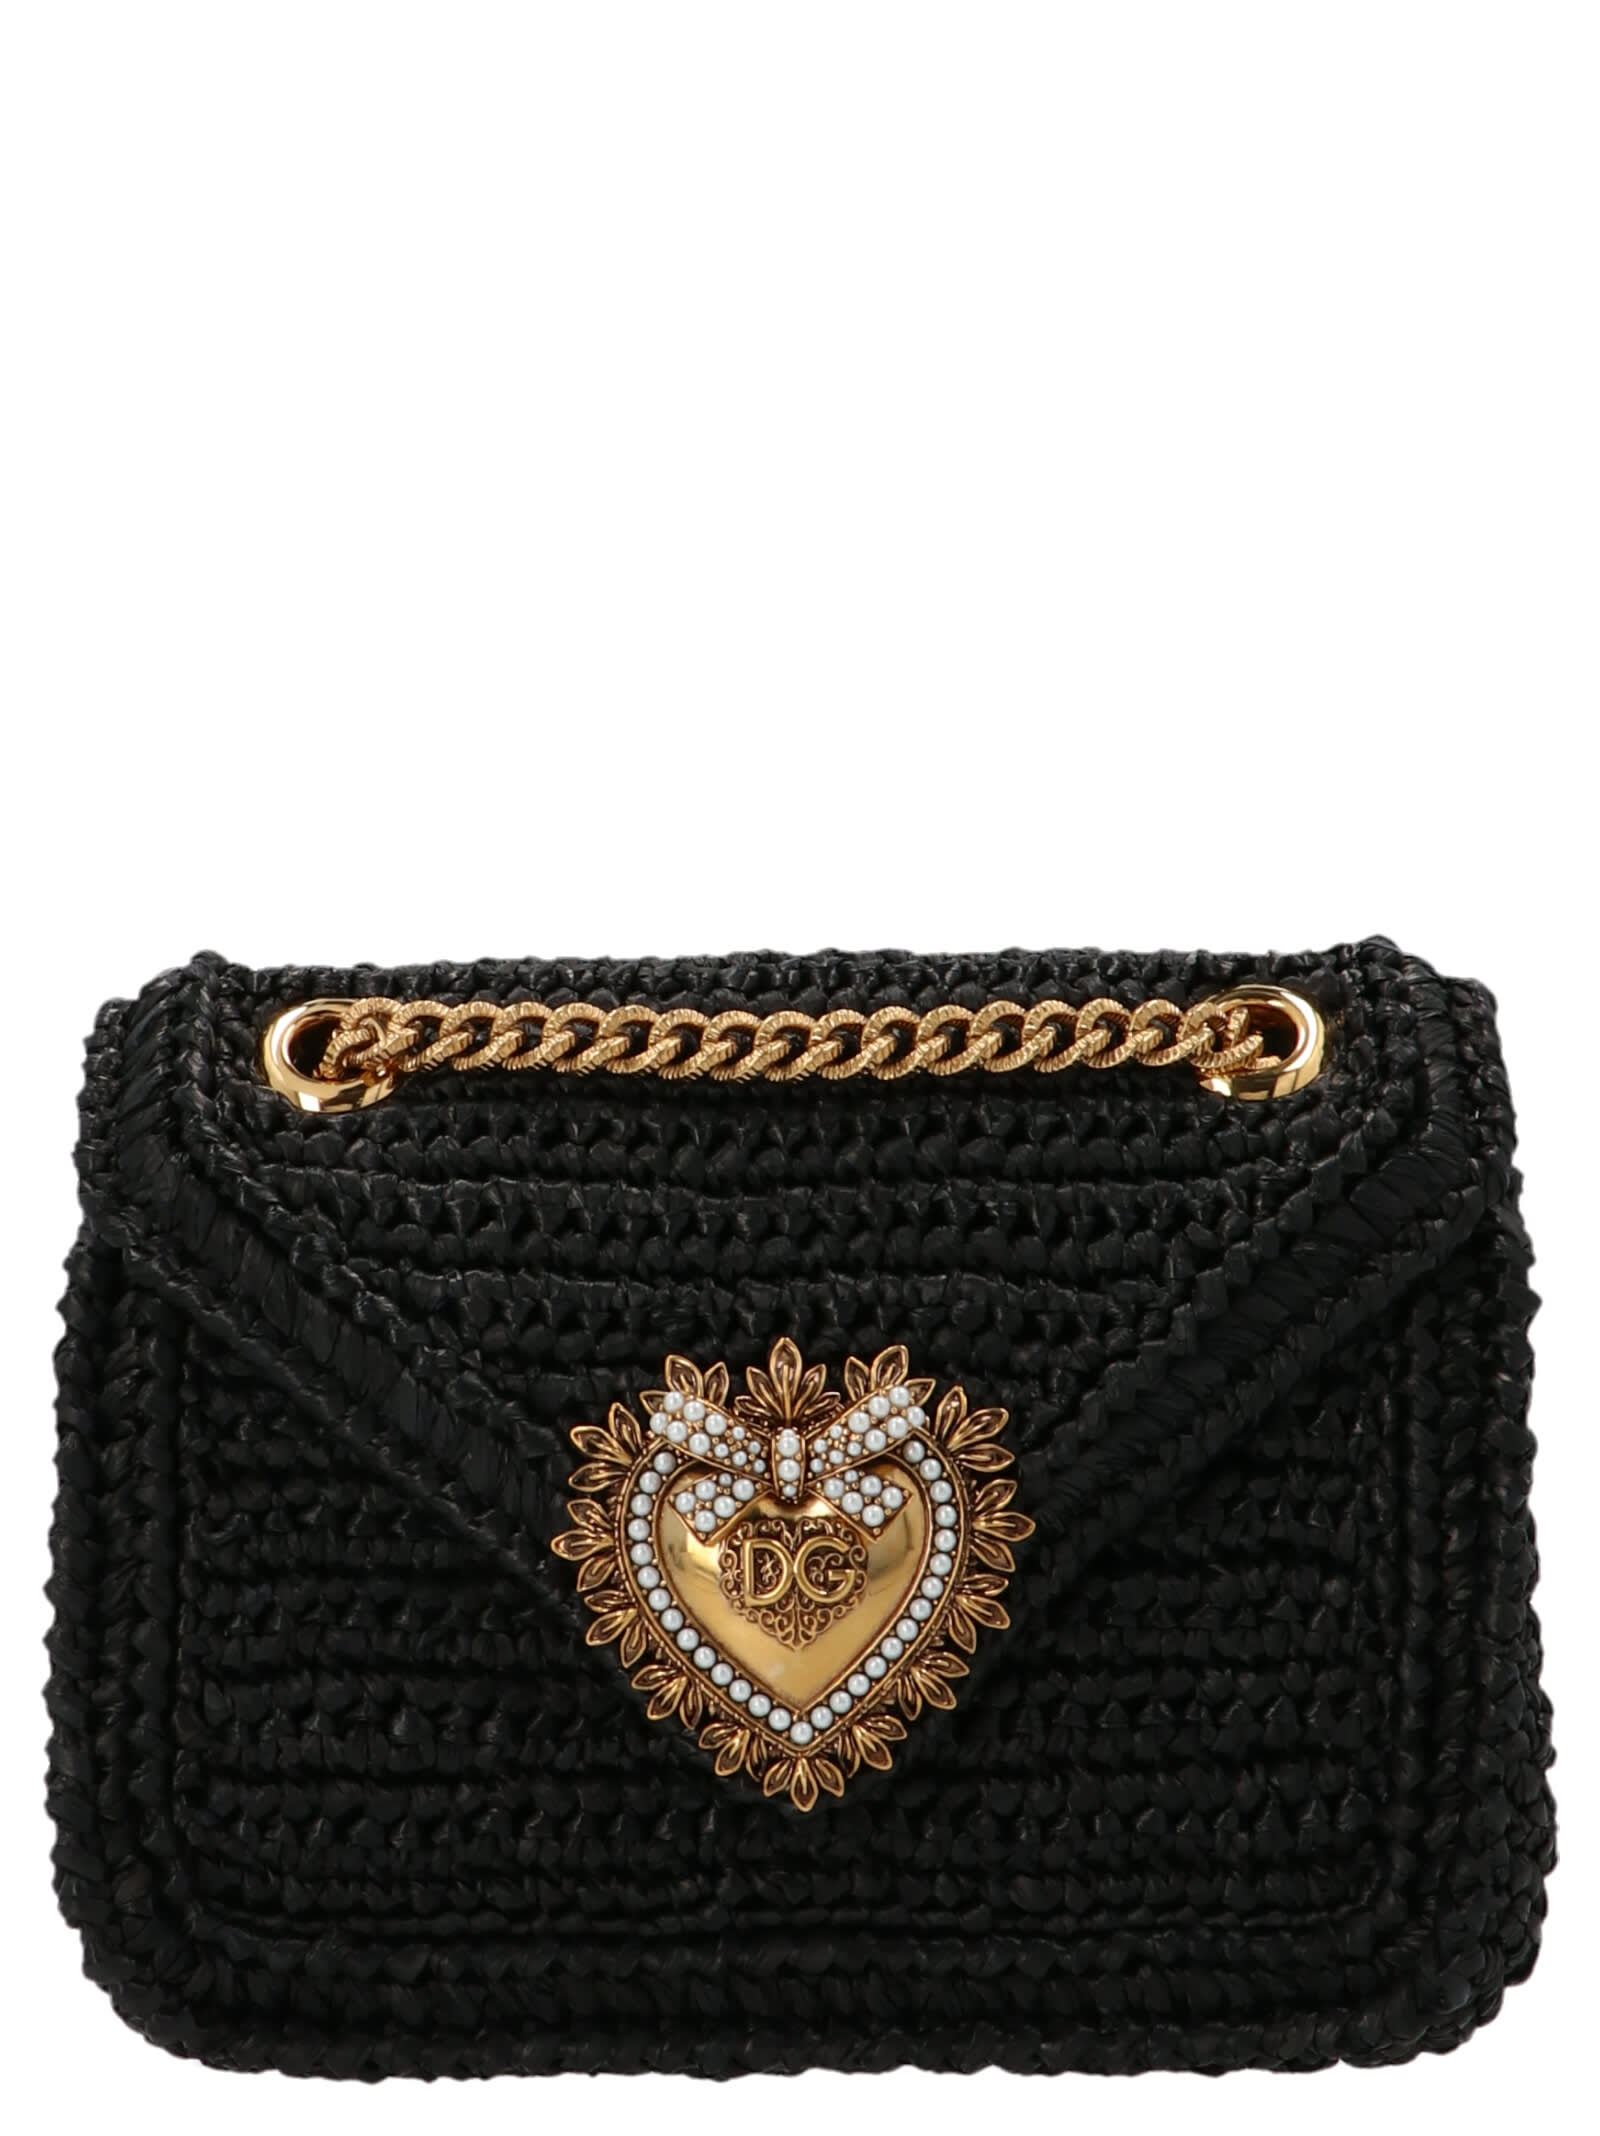 Dolce & Gabbana Devotion Bag In Black